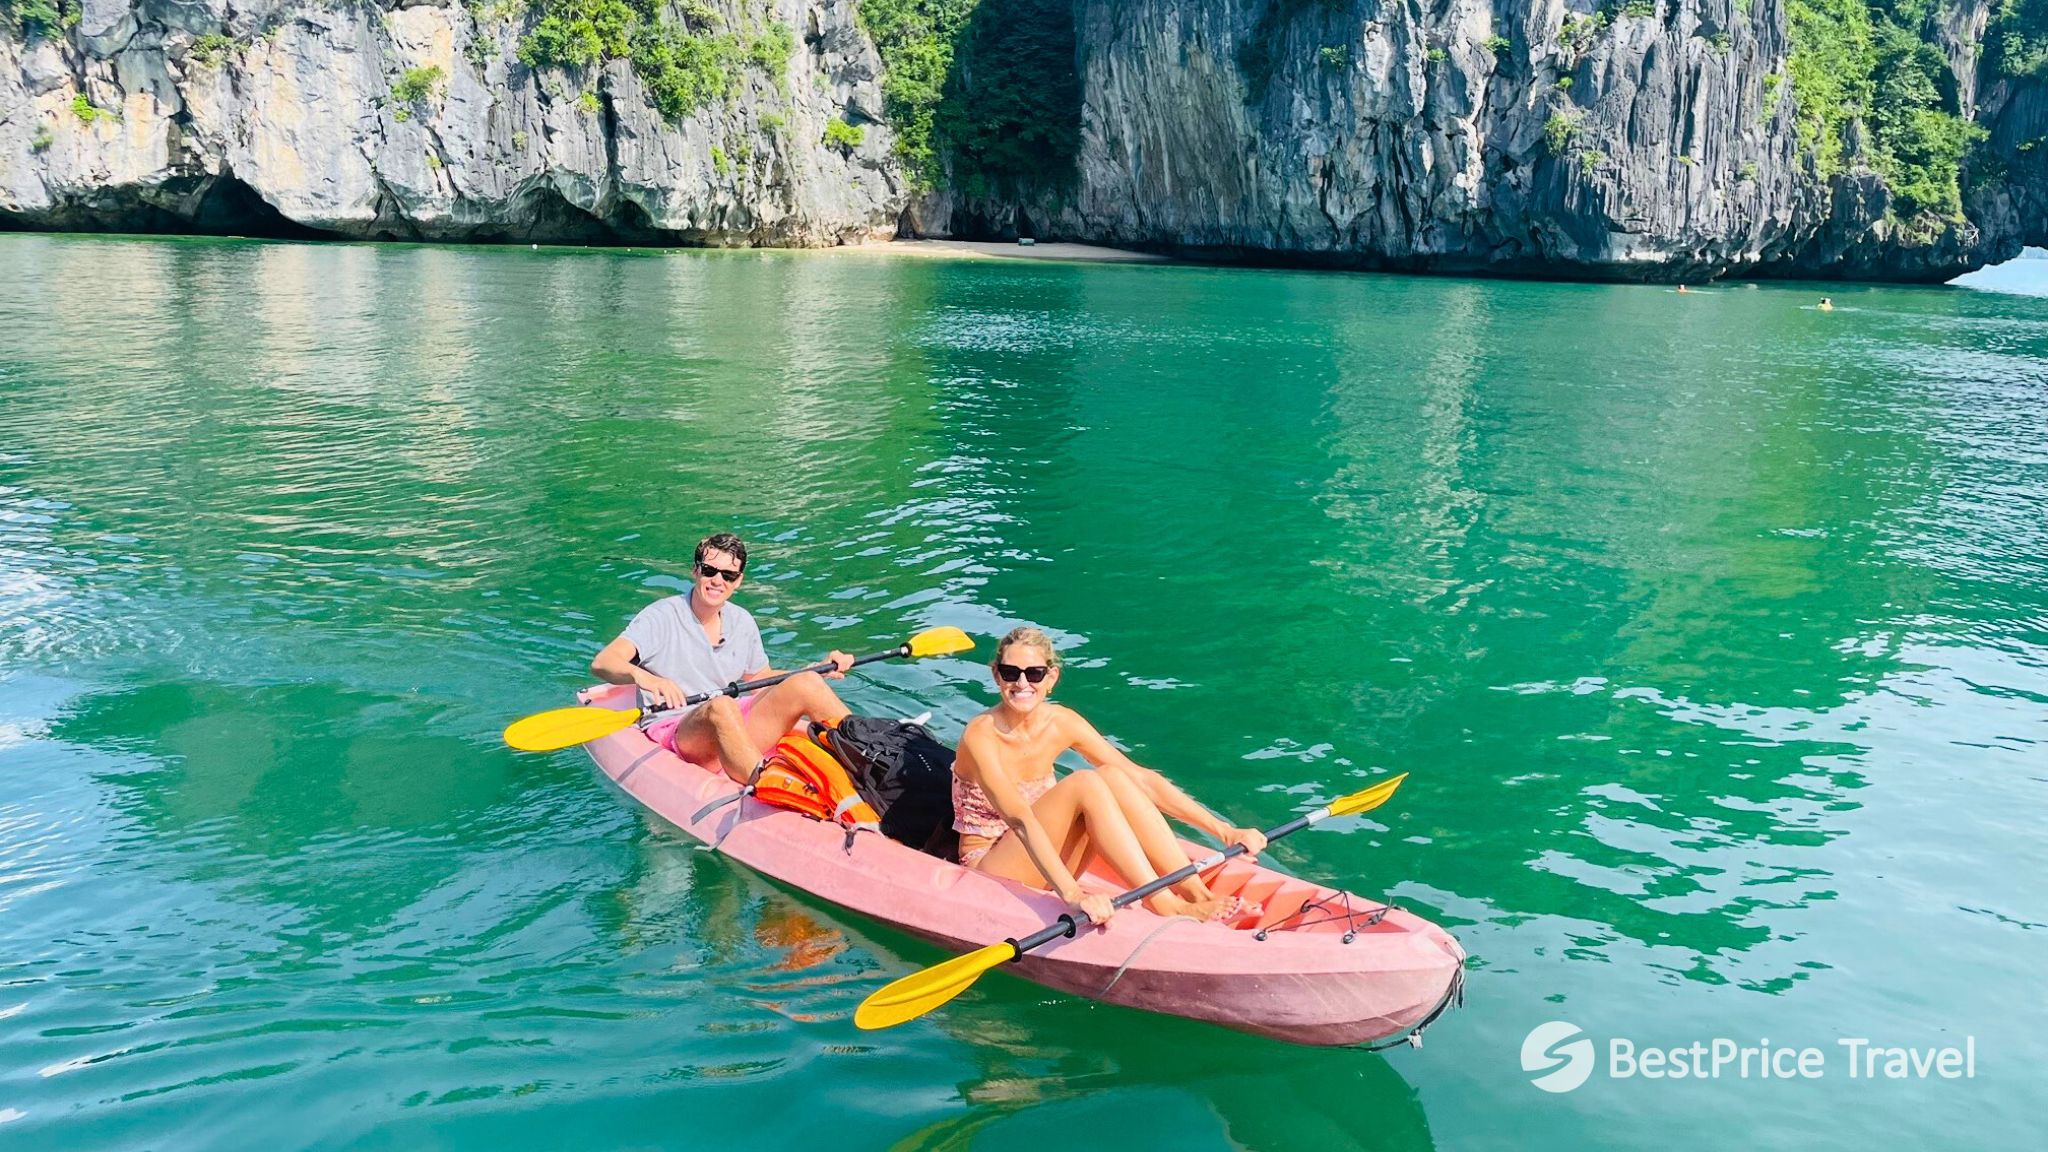 Day 4 Enjoy A Kayaking Trip Through Halong Bay